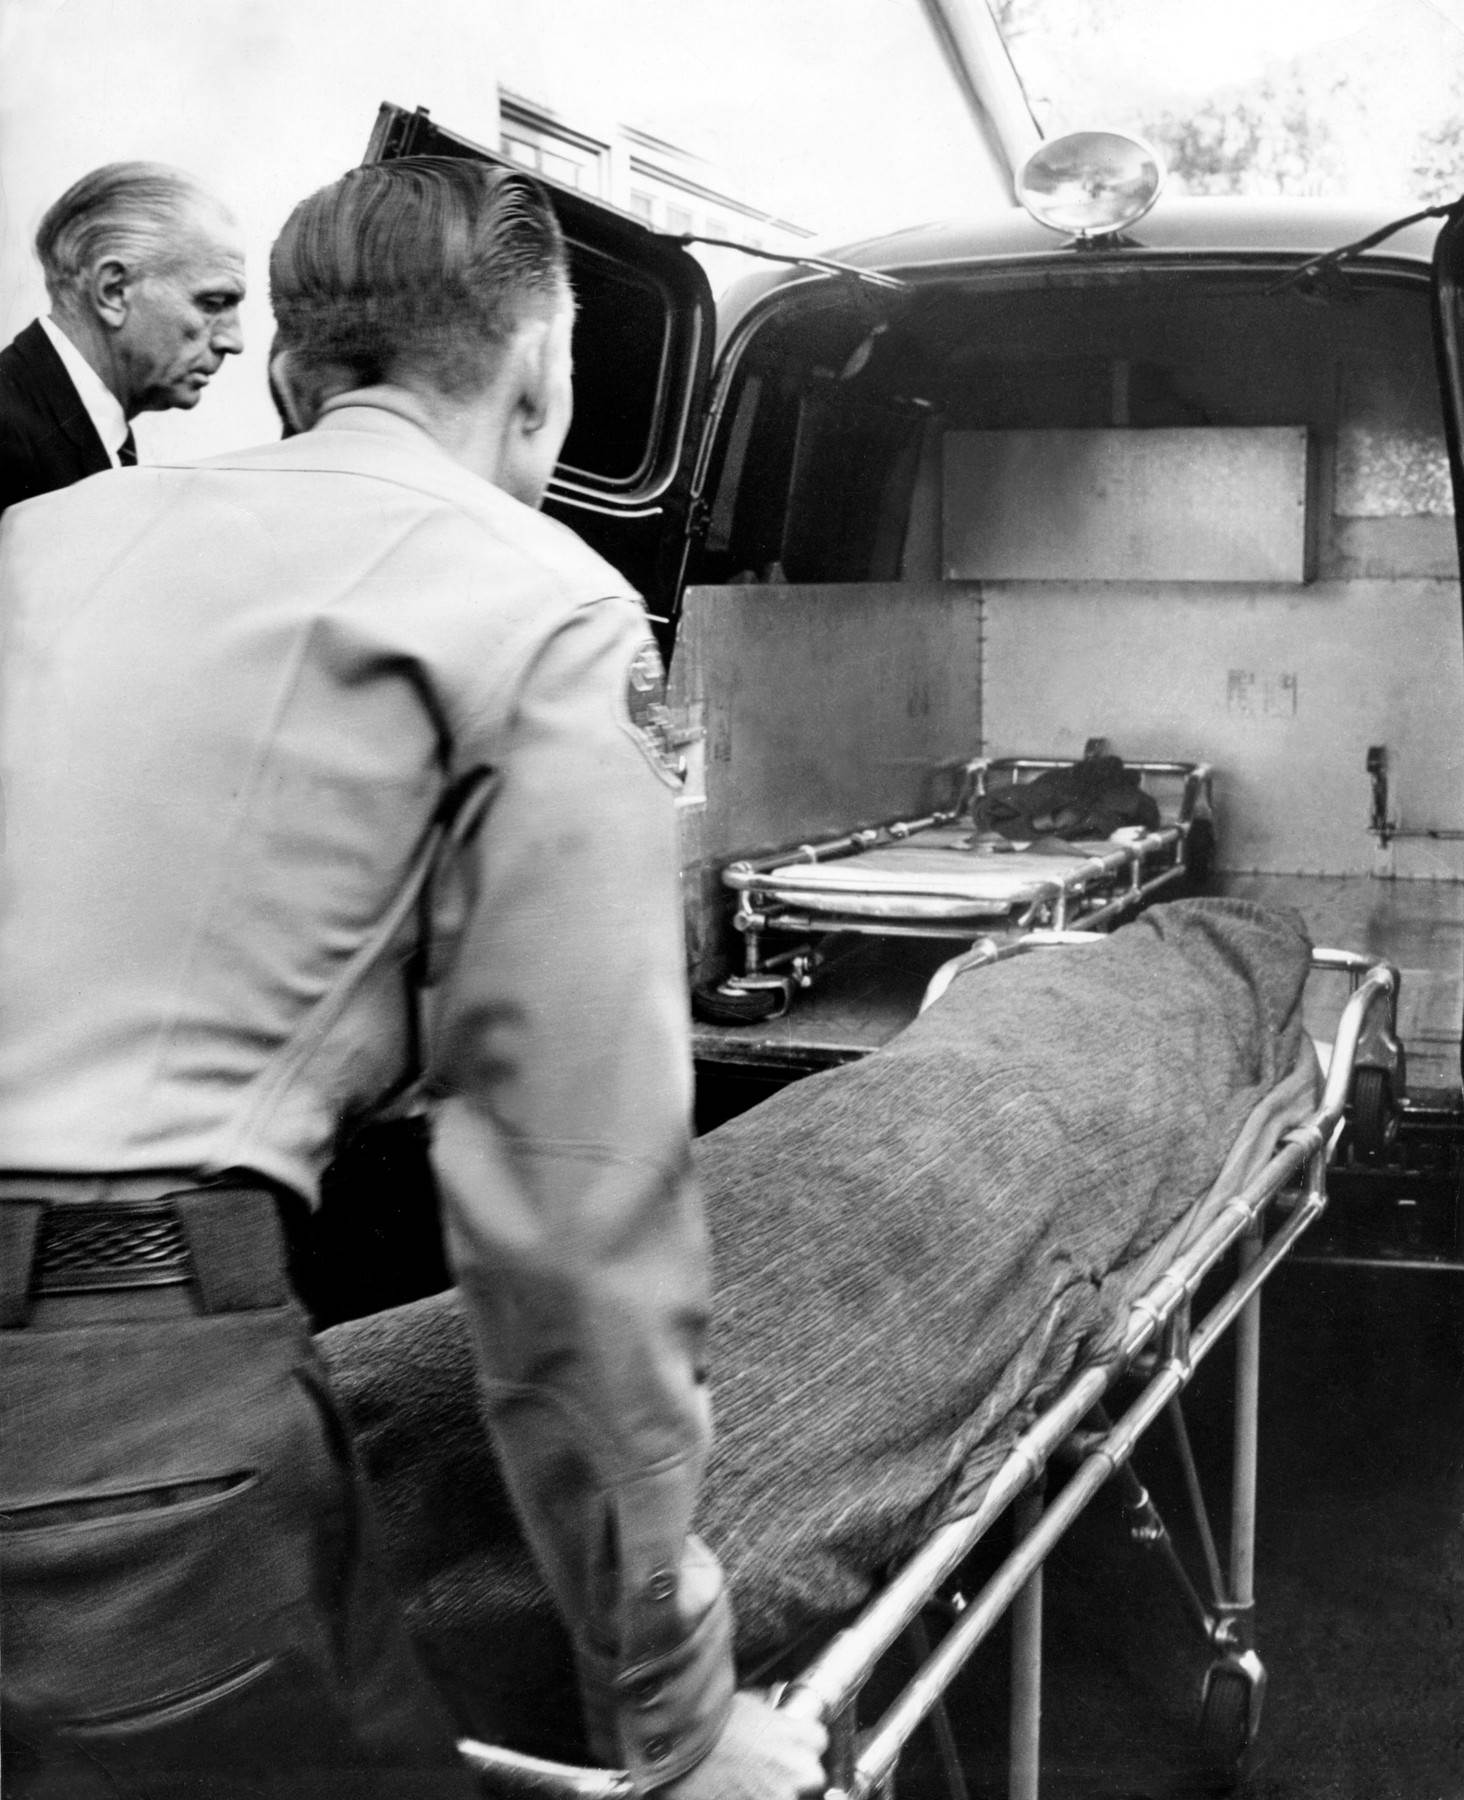  merilin monro umrla je 5. avgusta 1962. godine 